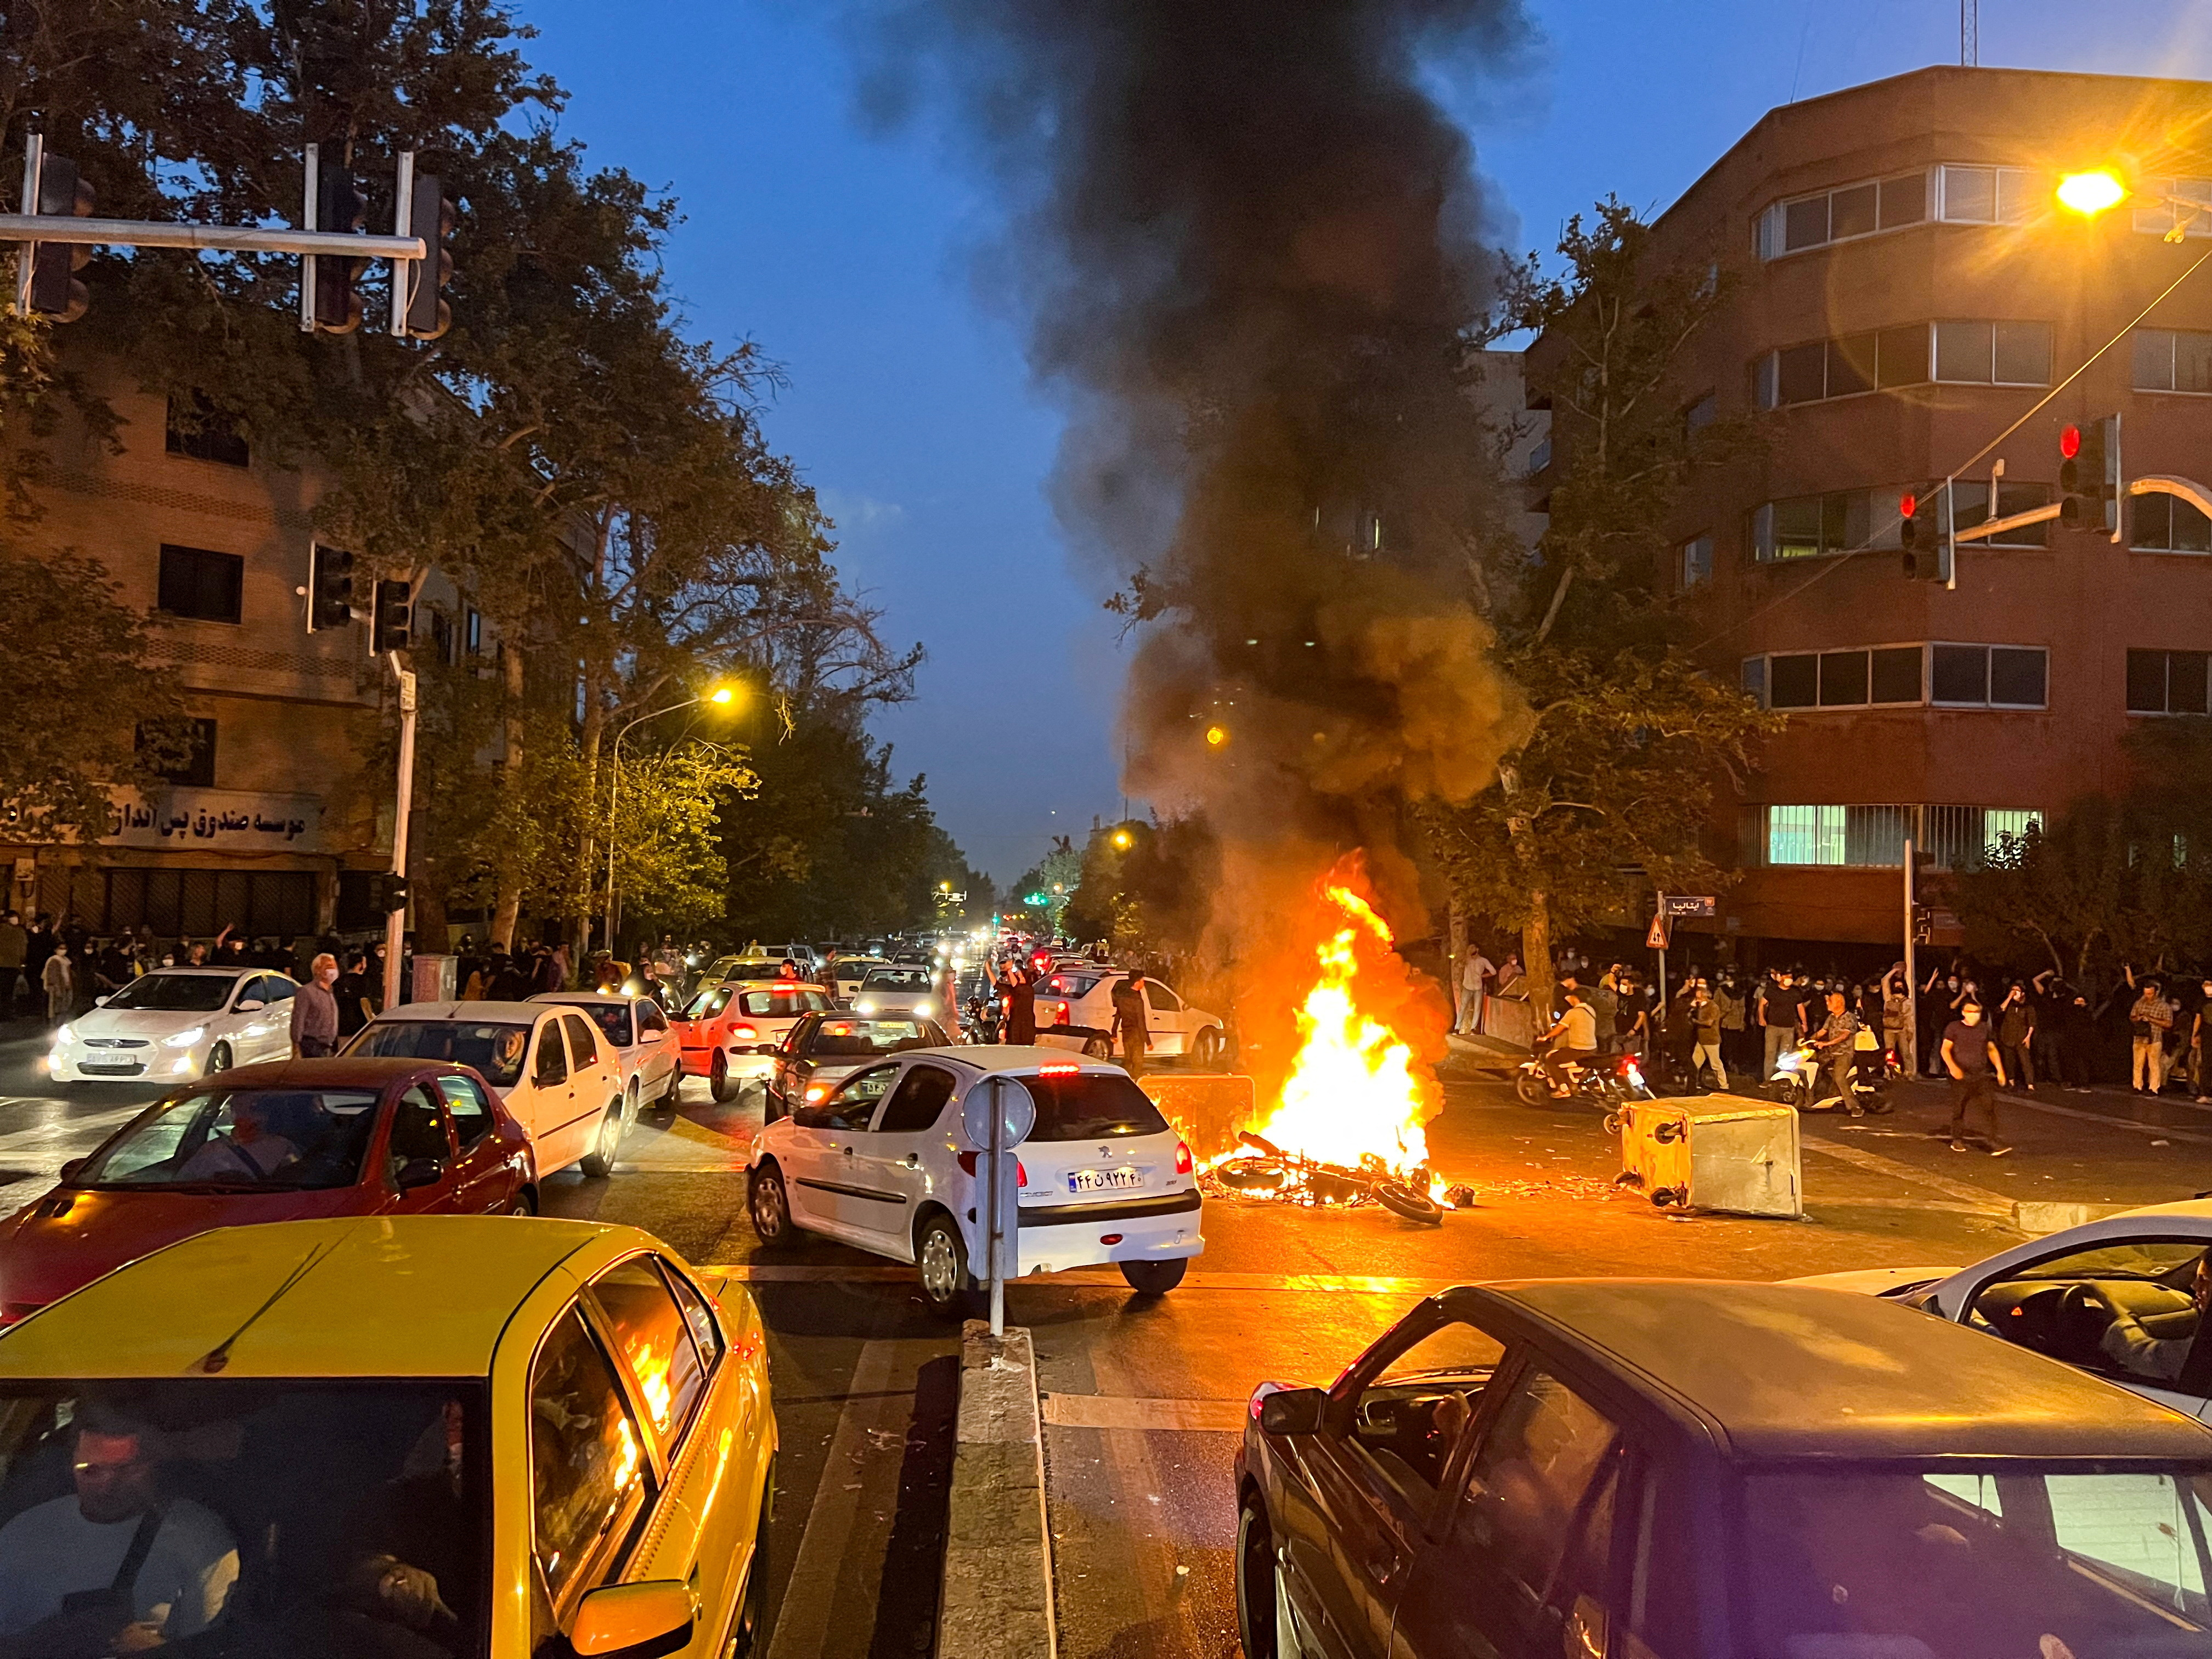 Una motocicleta de la policía arde durante una protesta por la muerte de Mahsa Amini, en Teherán, Irán, el 19 de septiembre de 2022. WANA (Agencia de Noticias de Asia Occidental) vía REUTERS/Archivo